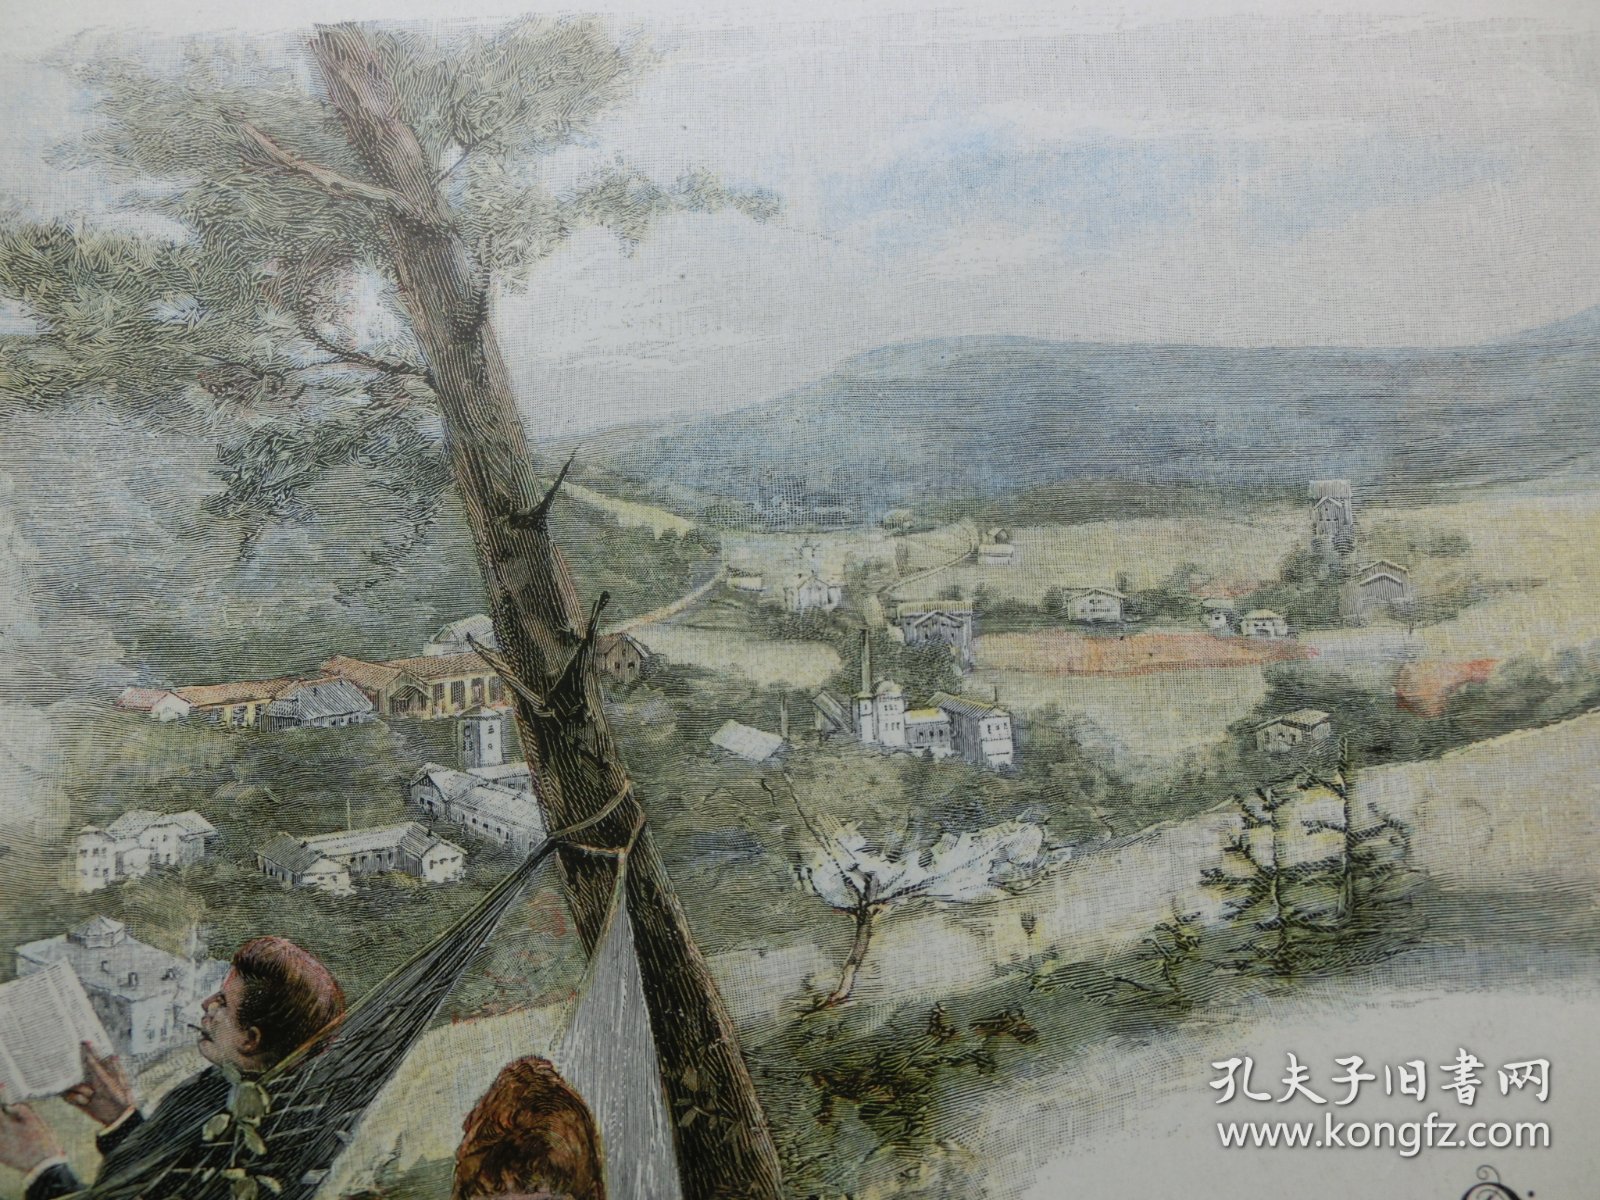 【百元包邮】《郊外休闲阅读》（Reinerz von dem Aussich spunkte quisisana gesehen）  1893年，套色木刻版画， 纸张尺寸约41×28厘米。